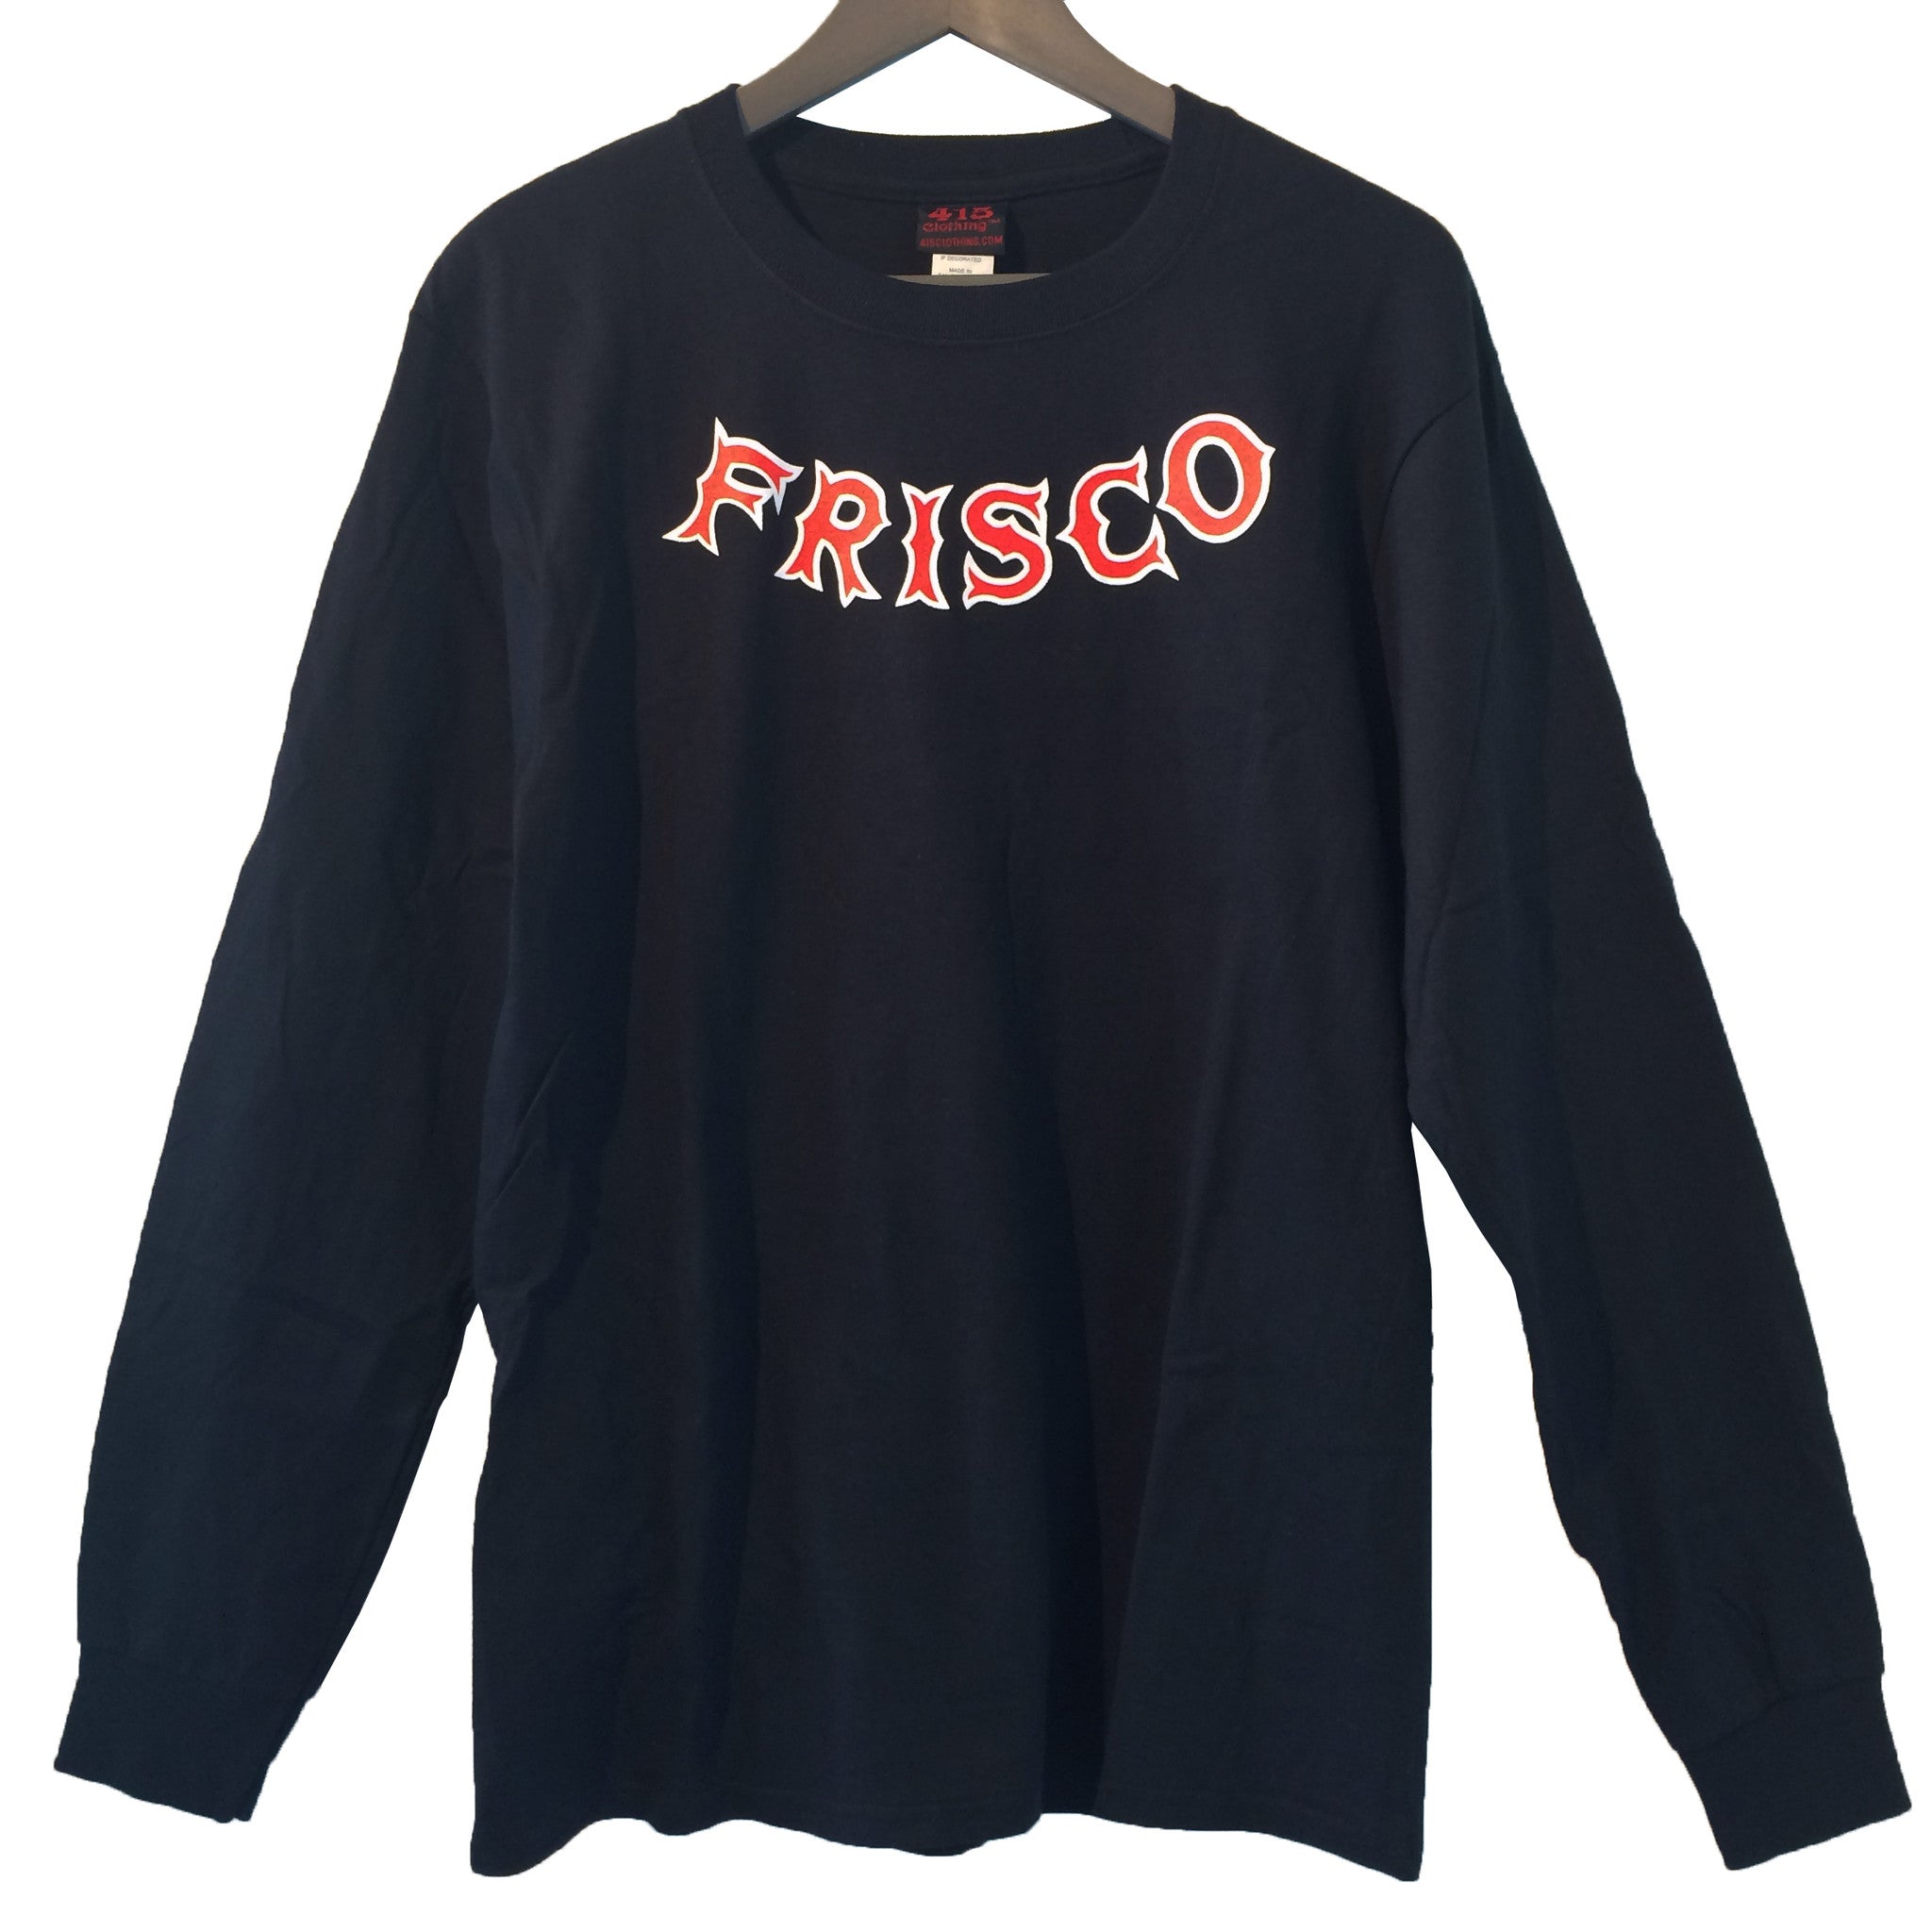 [415 CLOTHING] 415クロージング Frisco 415 L/S T-shirt (フリスコ 415 長袖 Tシャツ)